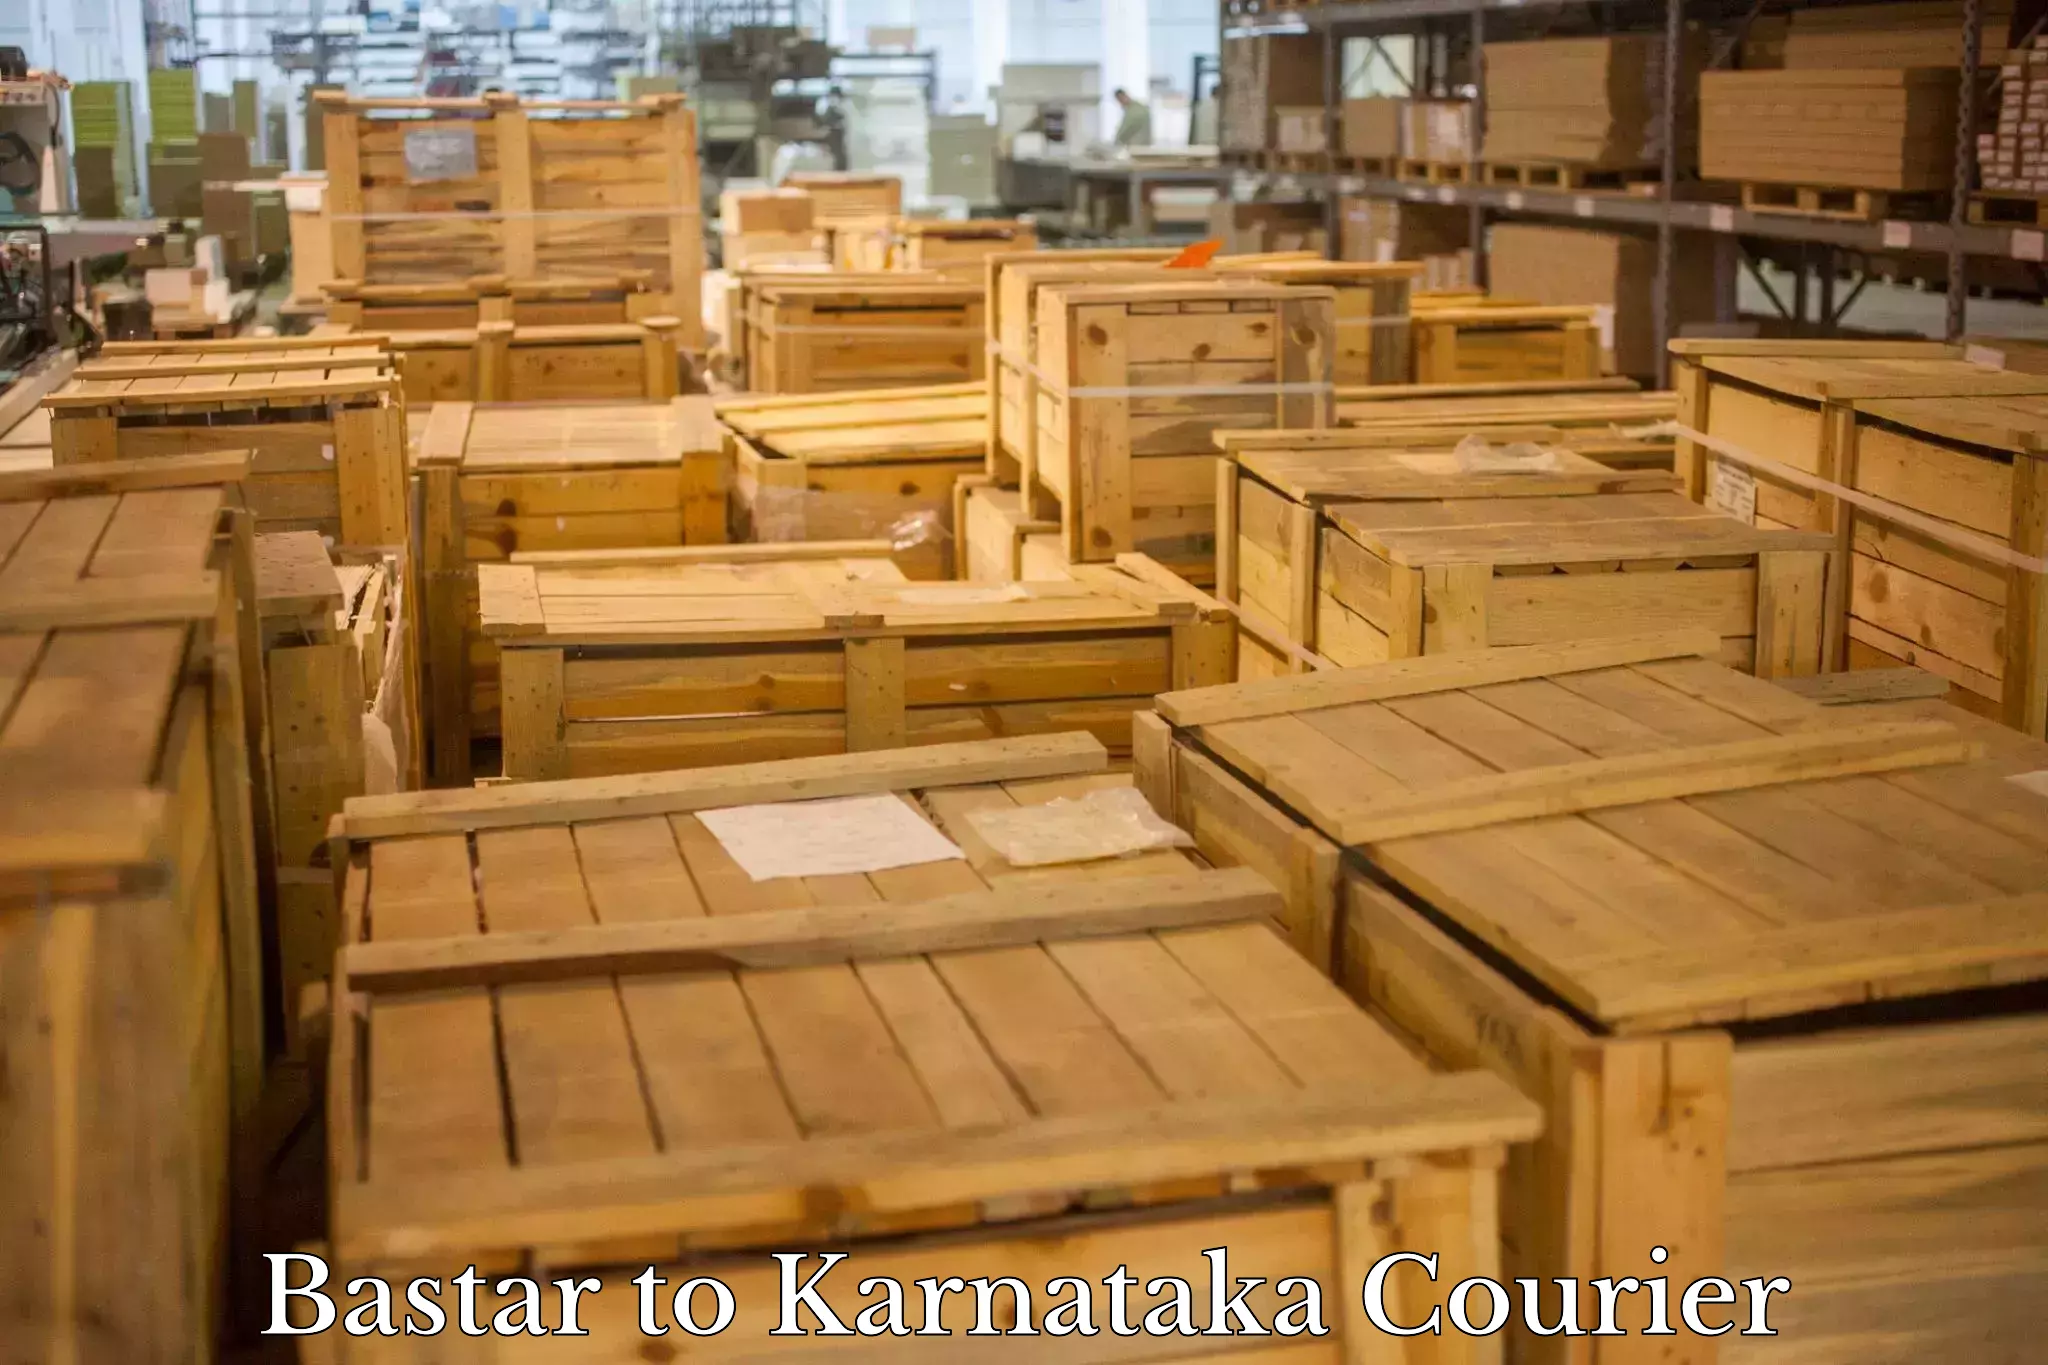 Next-day delivery options Bastar to Karnataka